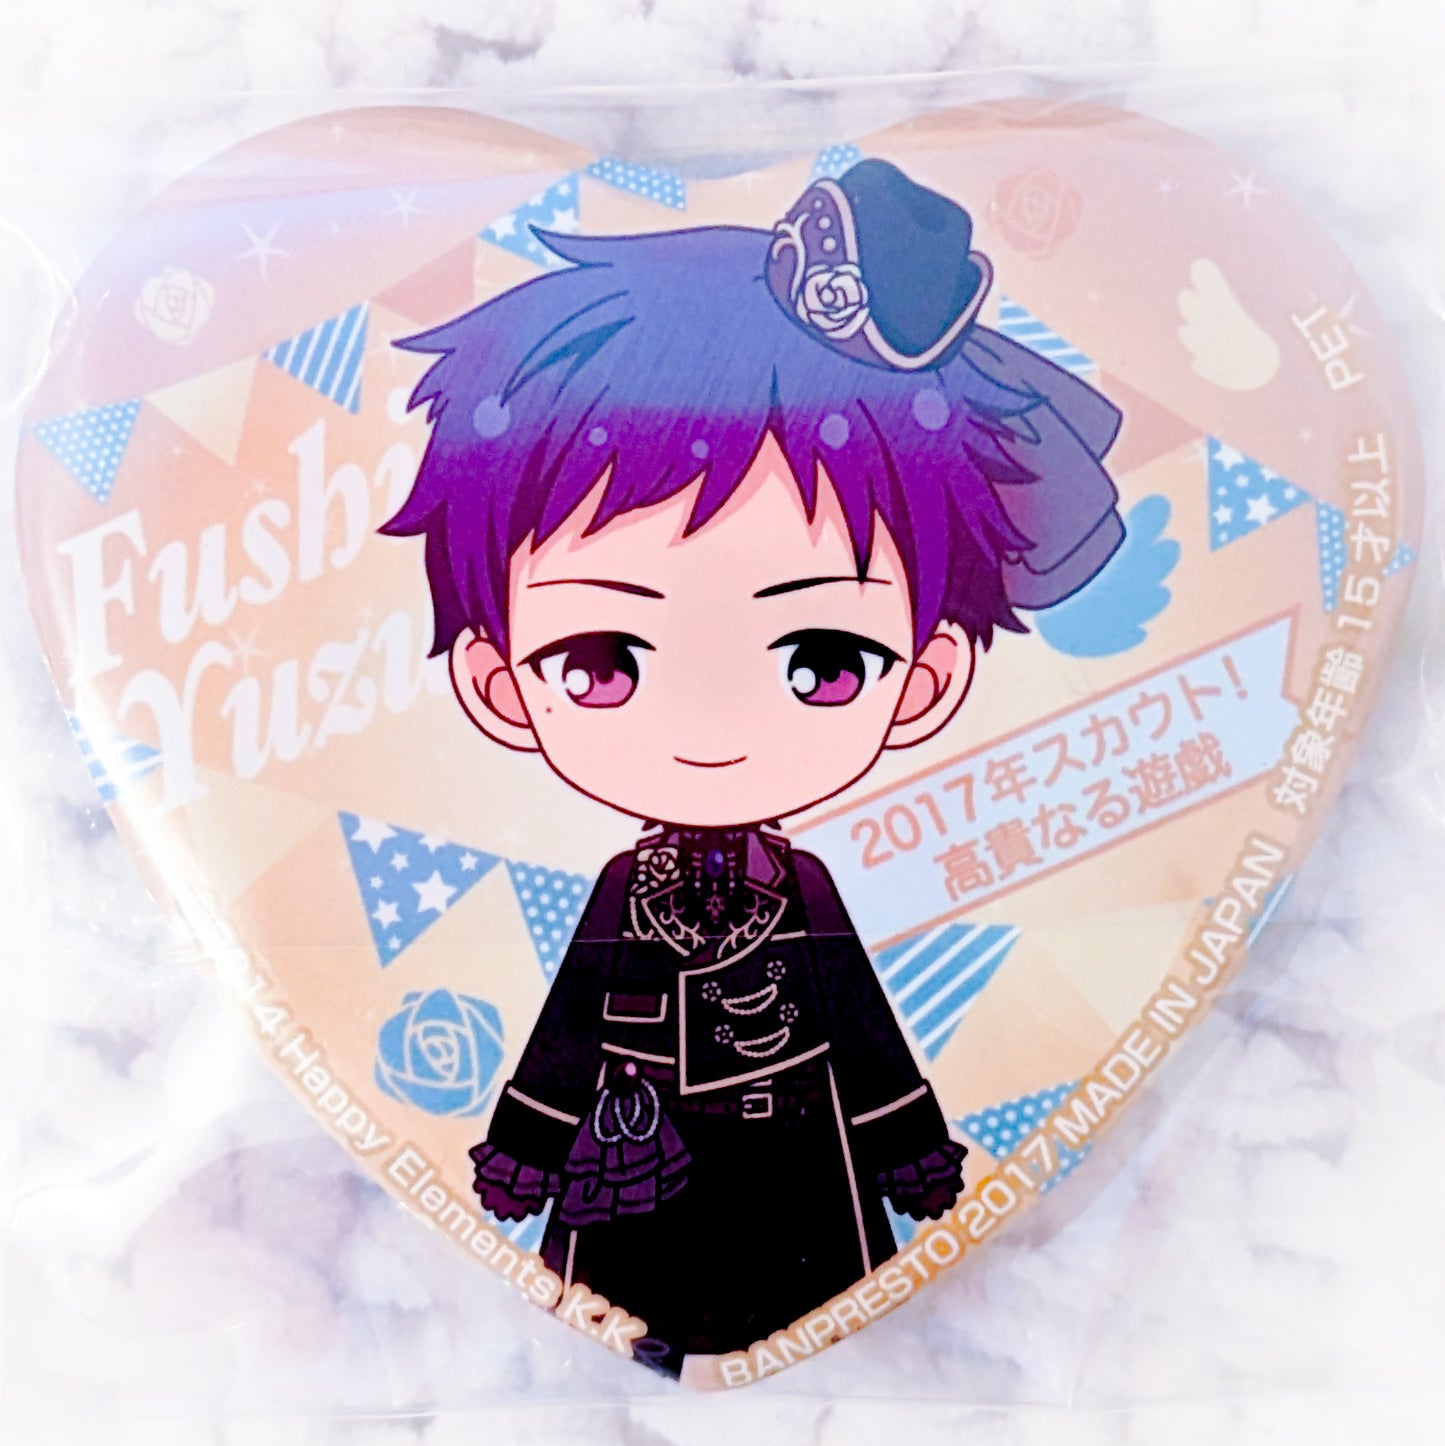 Yuzuru Fushimi - Ensemble Stars! fine Anime Chibi Heart Shaped Pin Badge Button